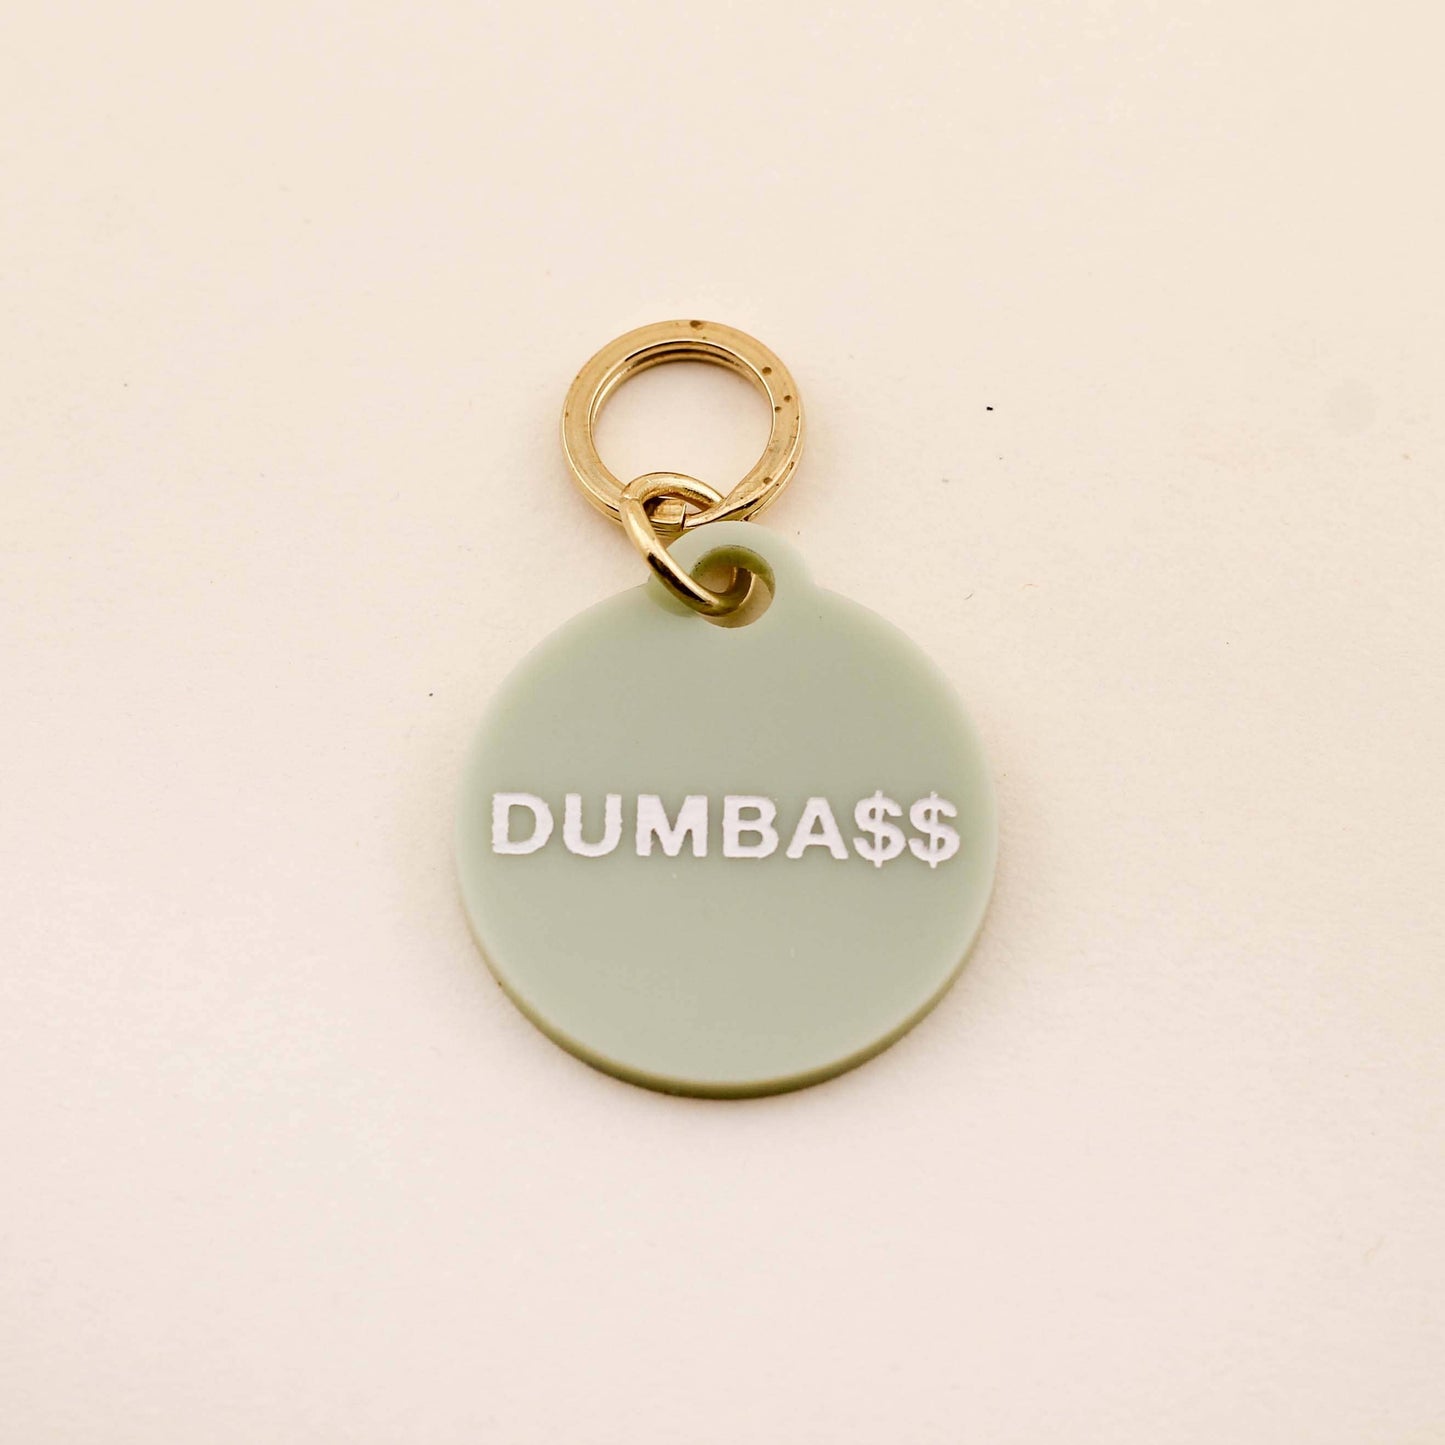 Dumba$$ Pet Tag: Sage Green Acrylic